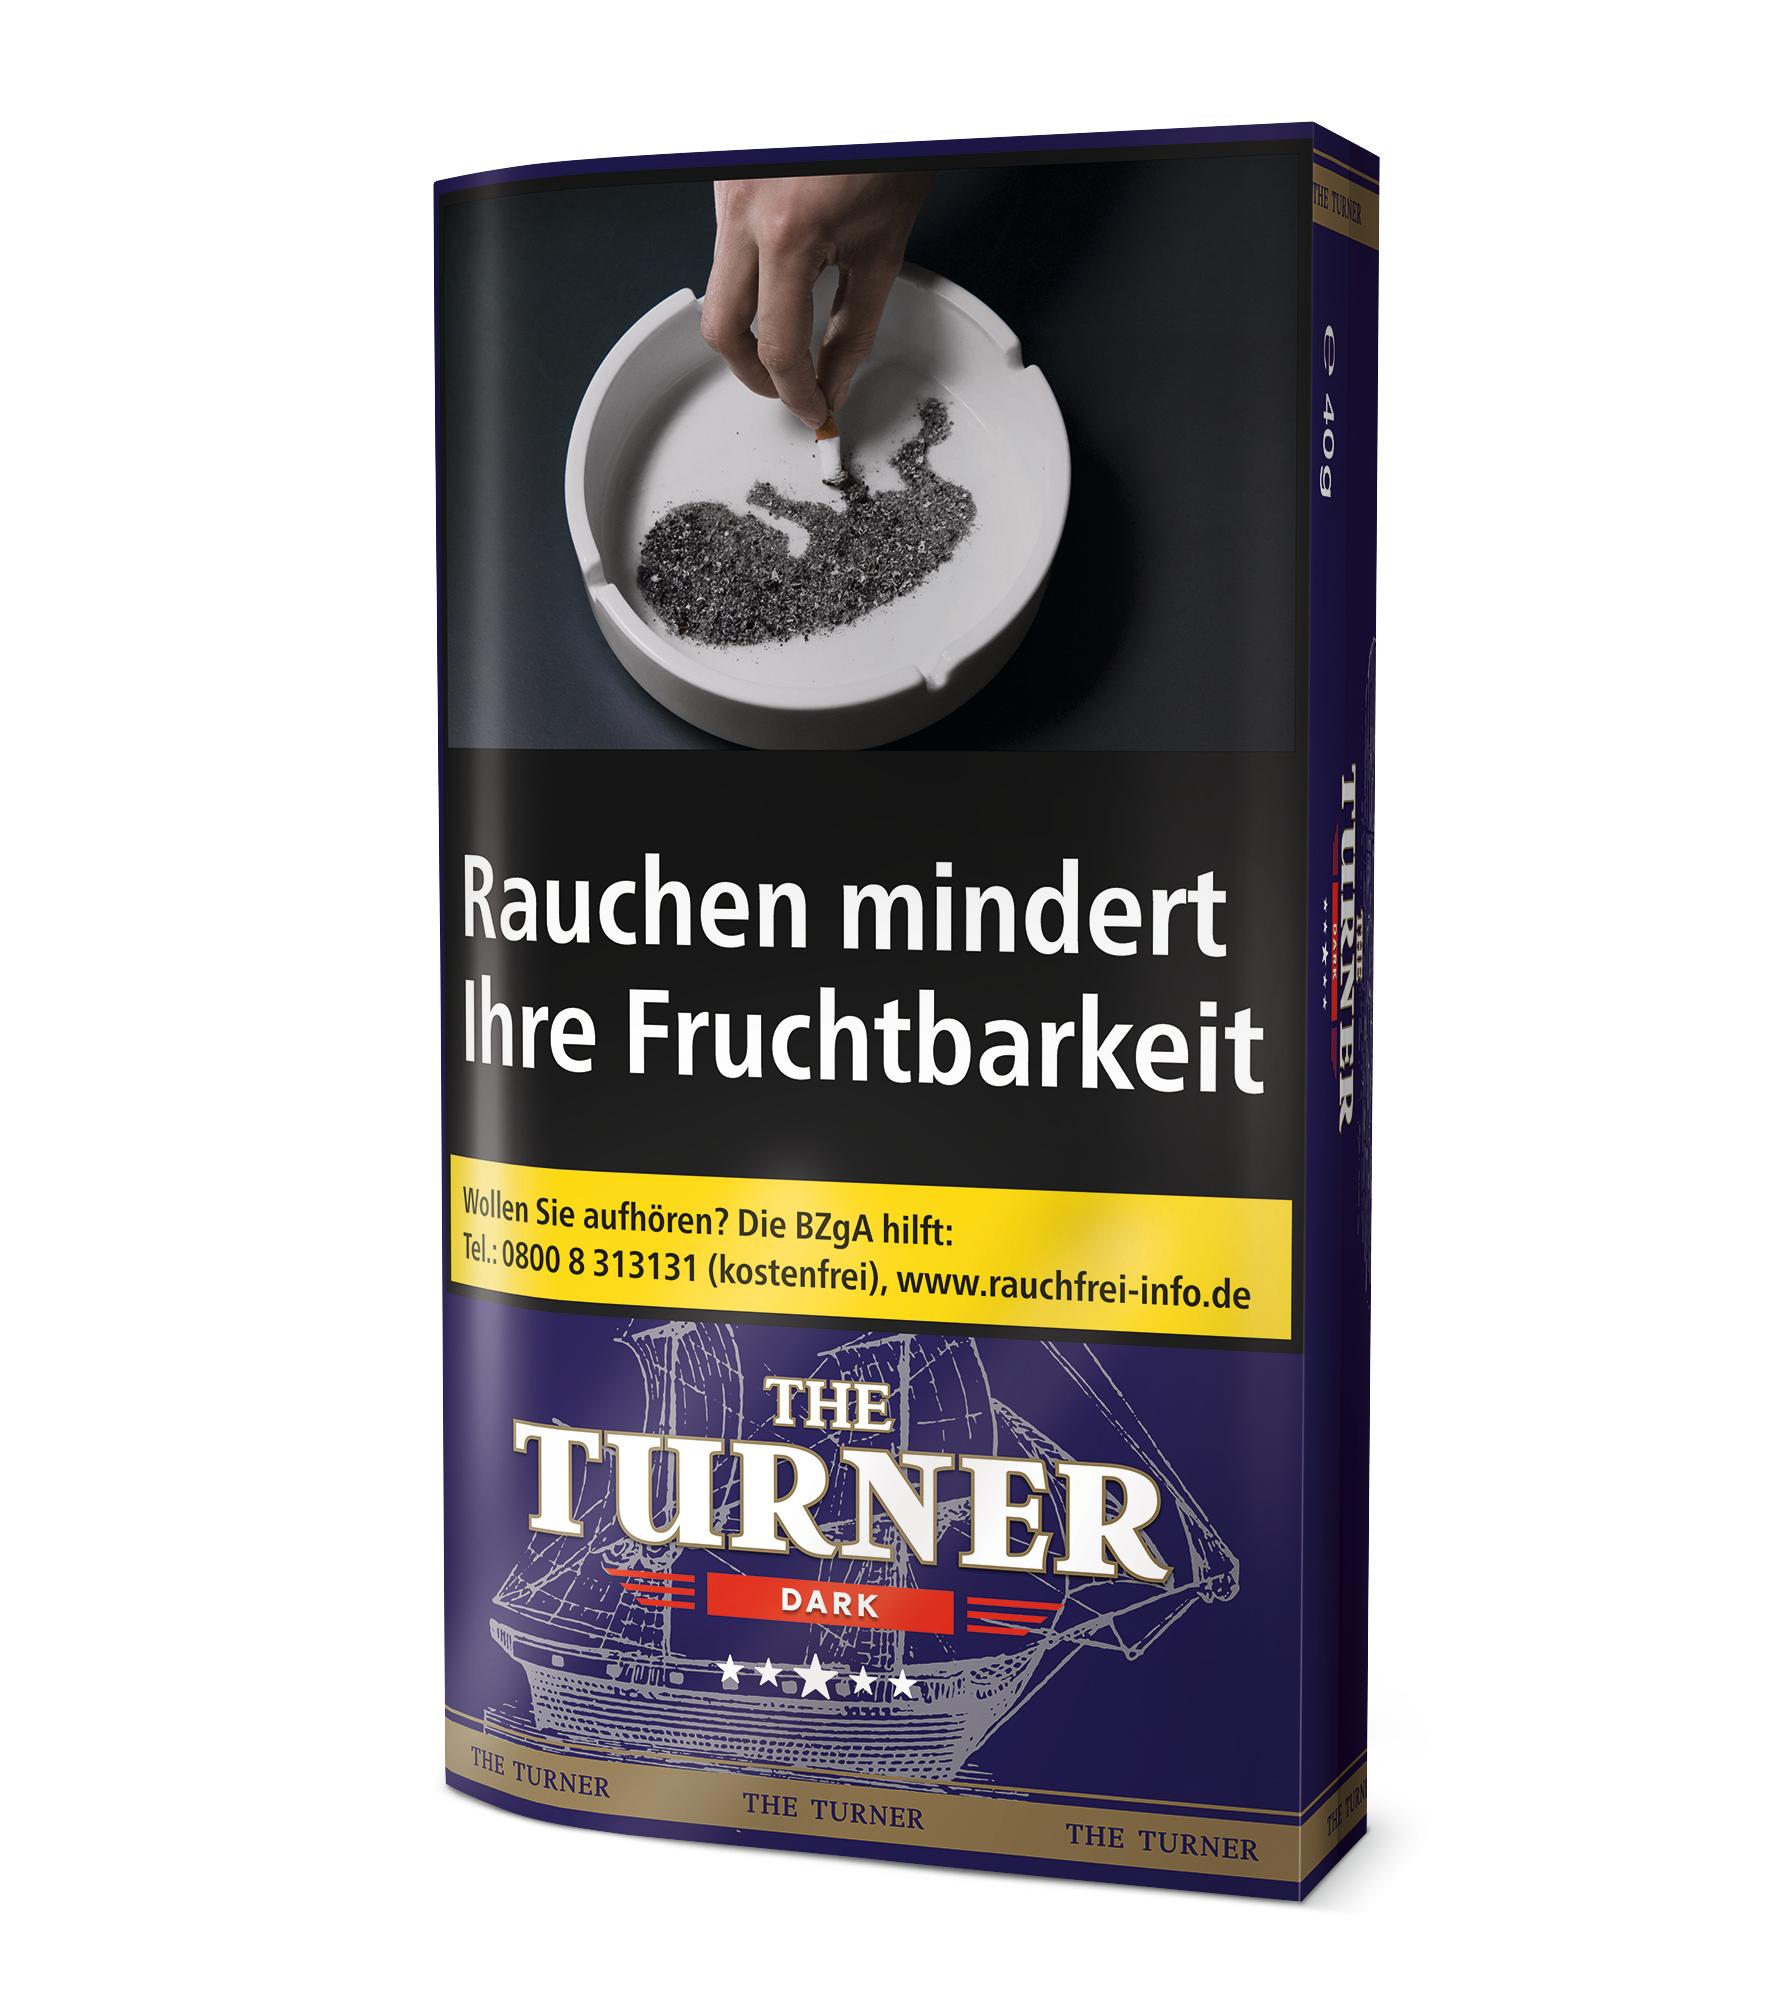 The Turner Zigarettentabak Dark 1 Packung